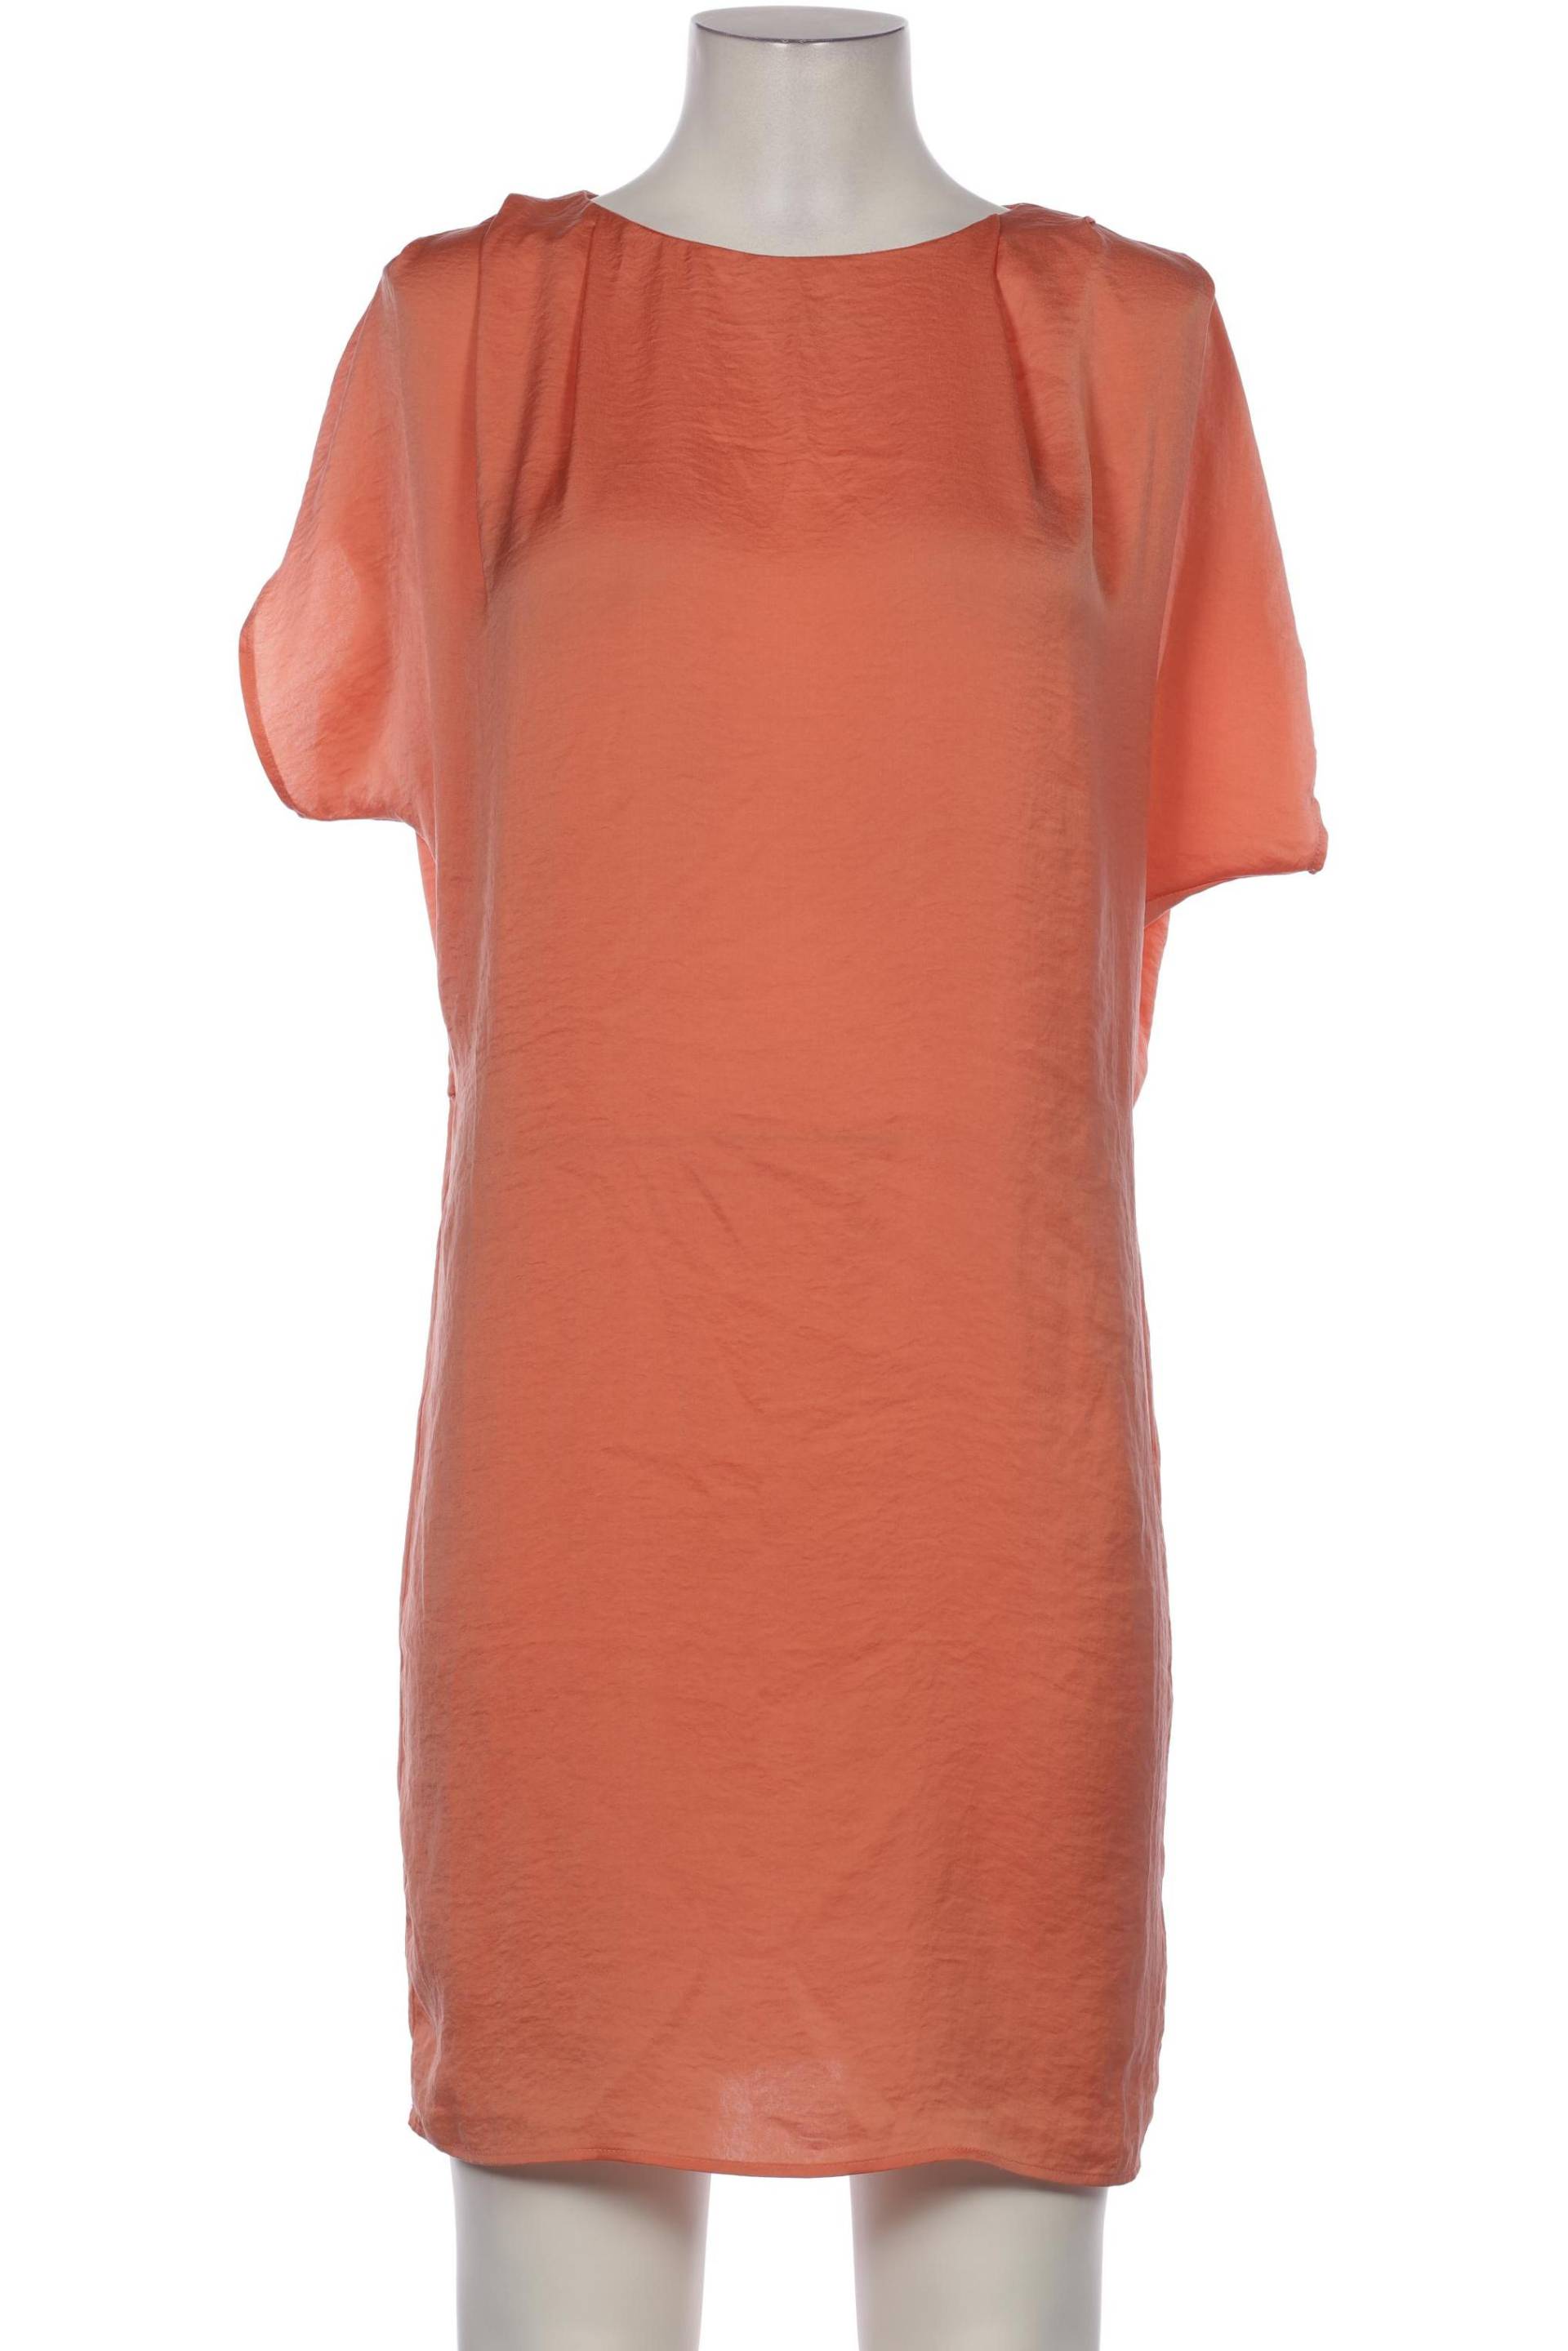 ICHI Damen Kleid, orange von Ichi